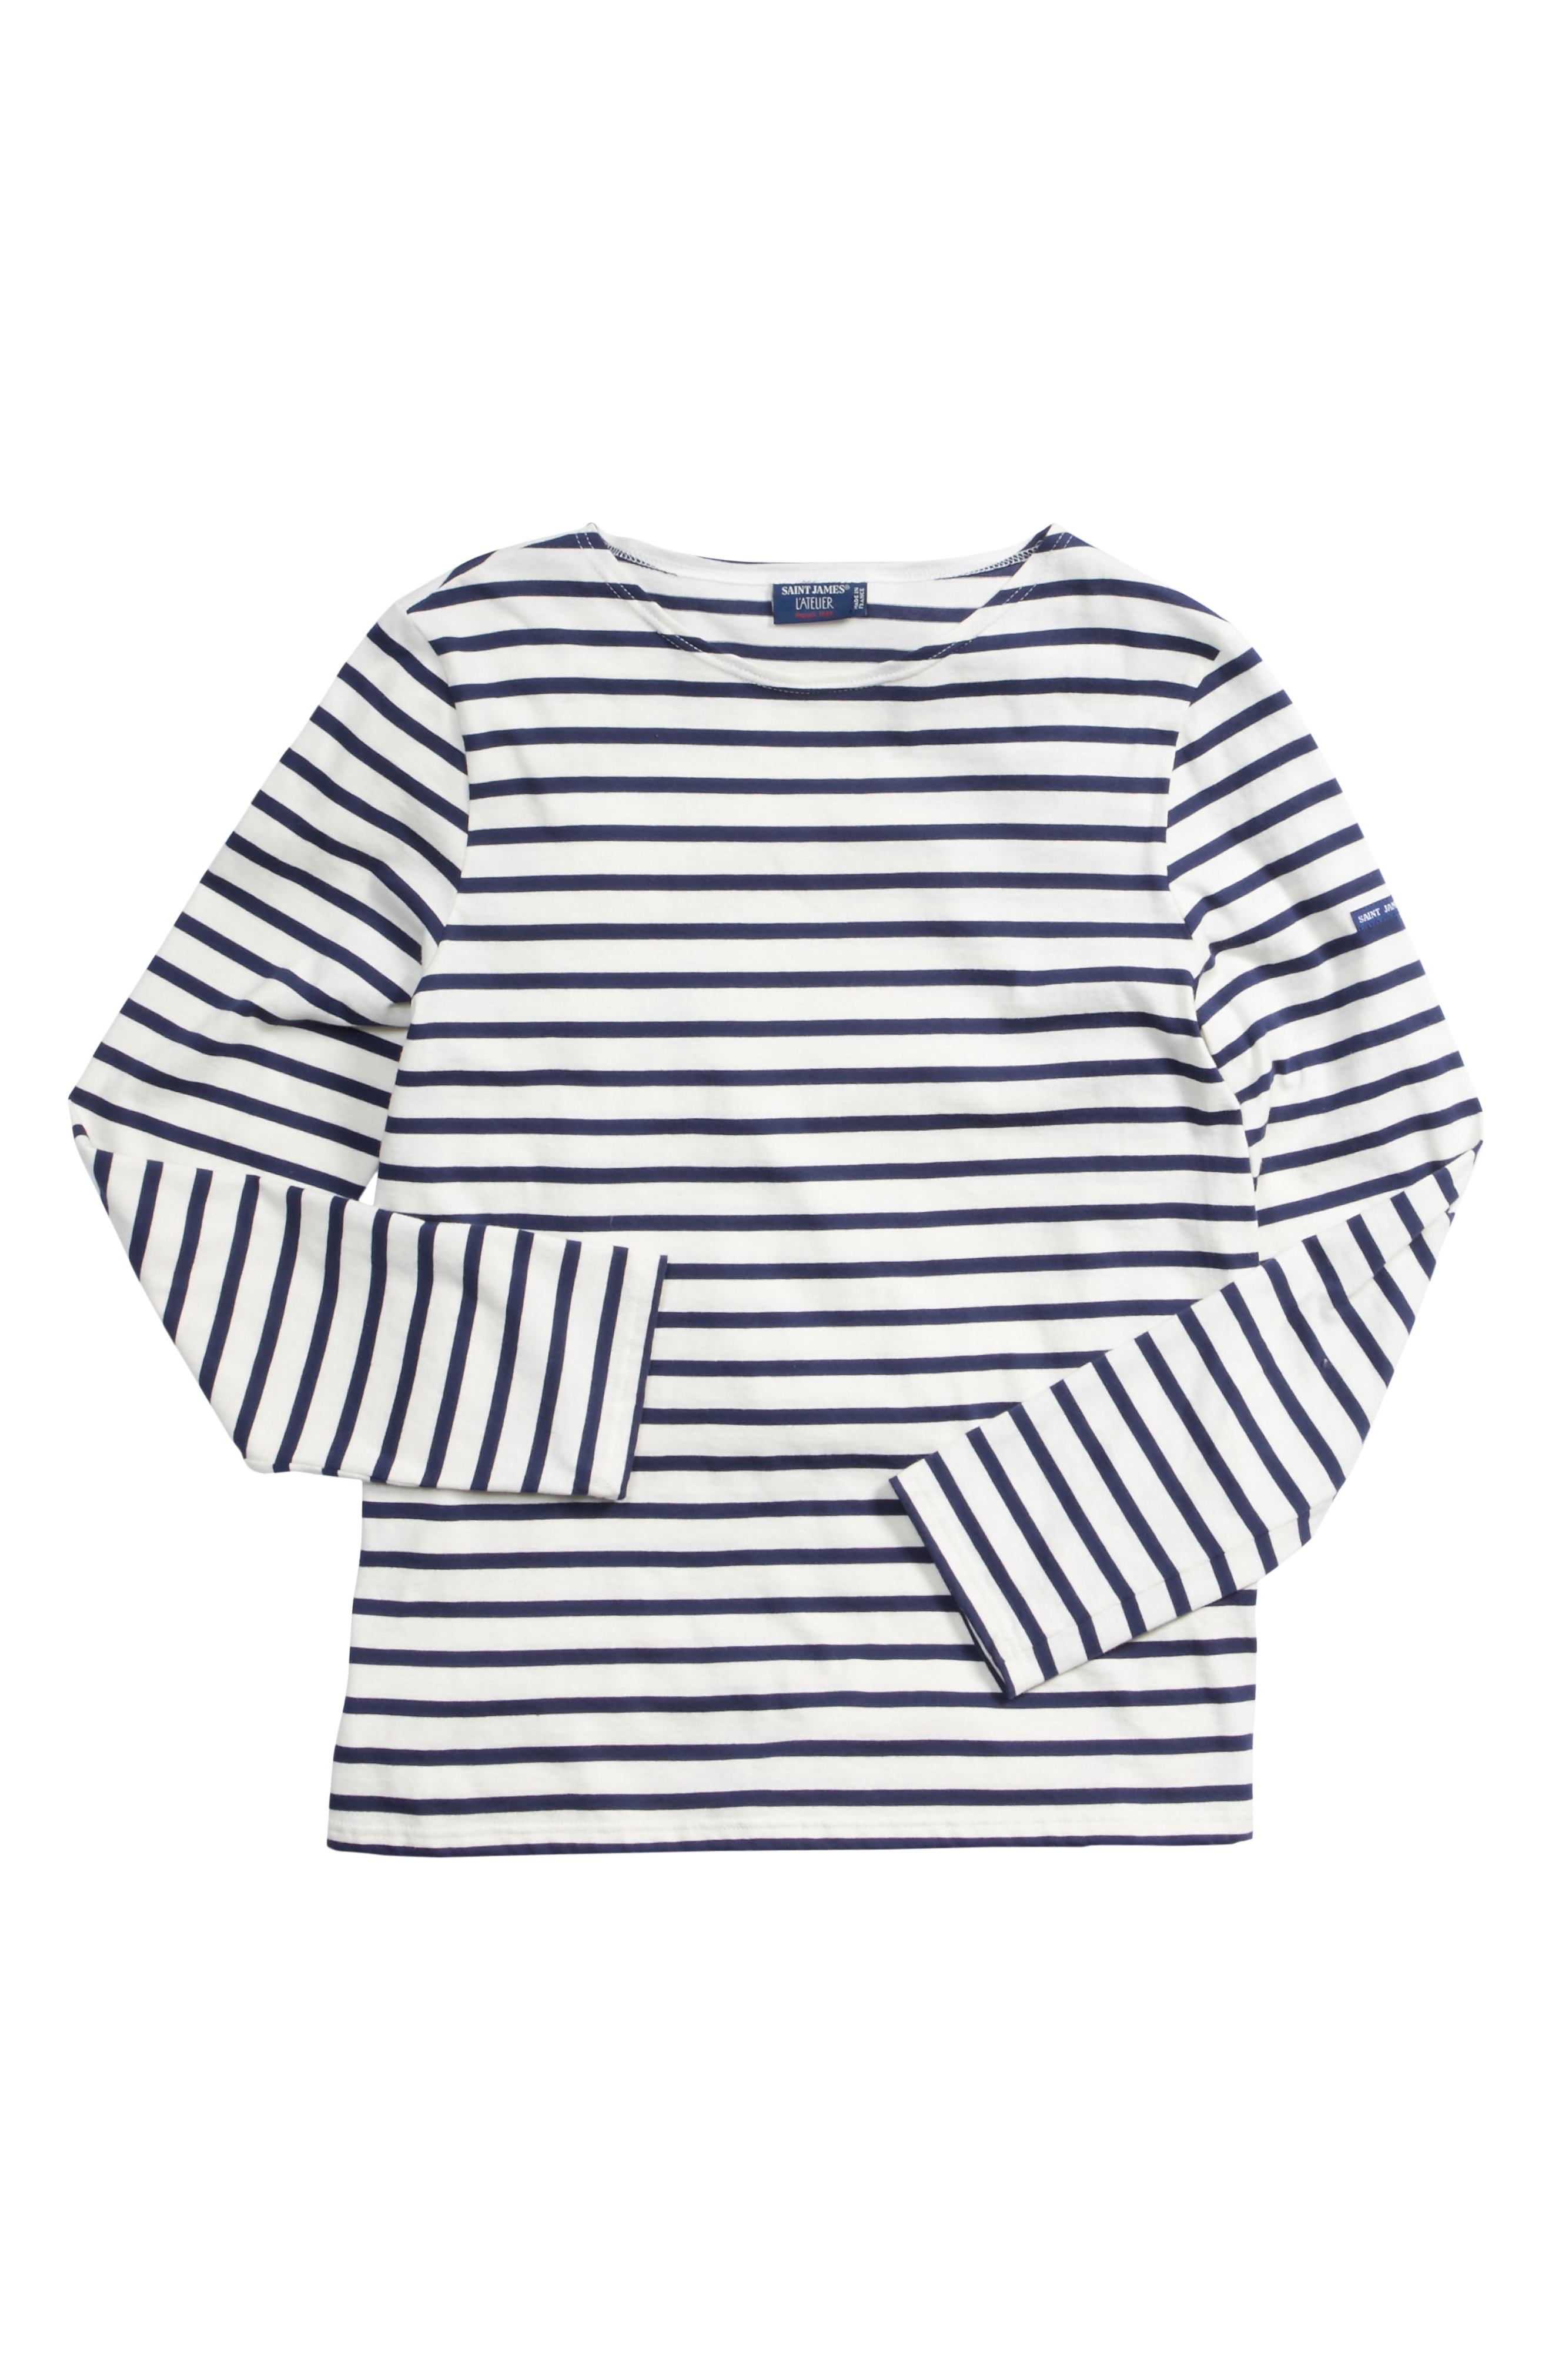 Saint James Minquiers Moderne Striped Sailor Shirt (Unisex)